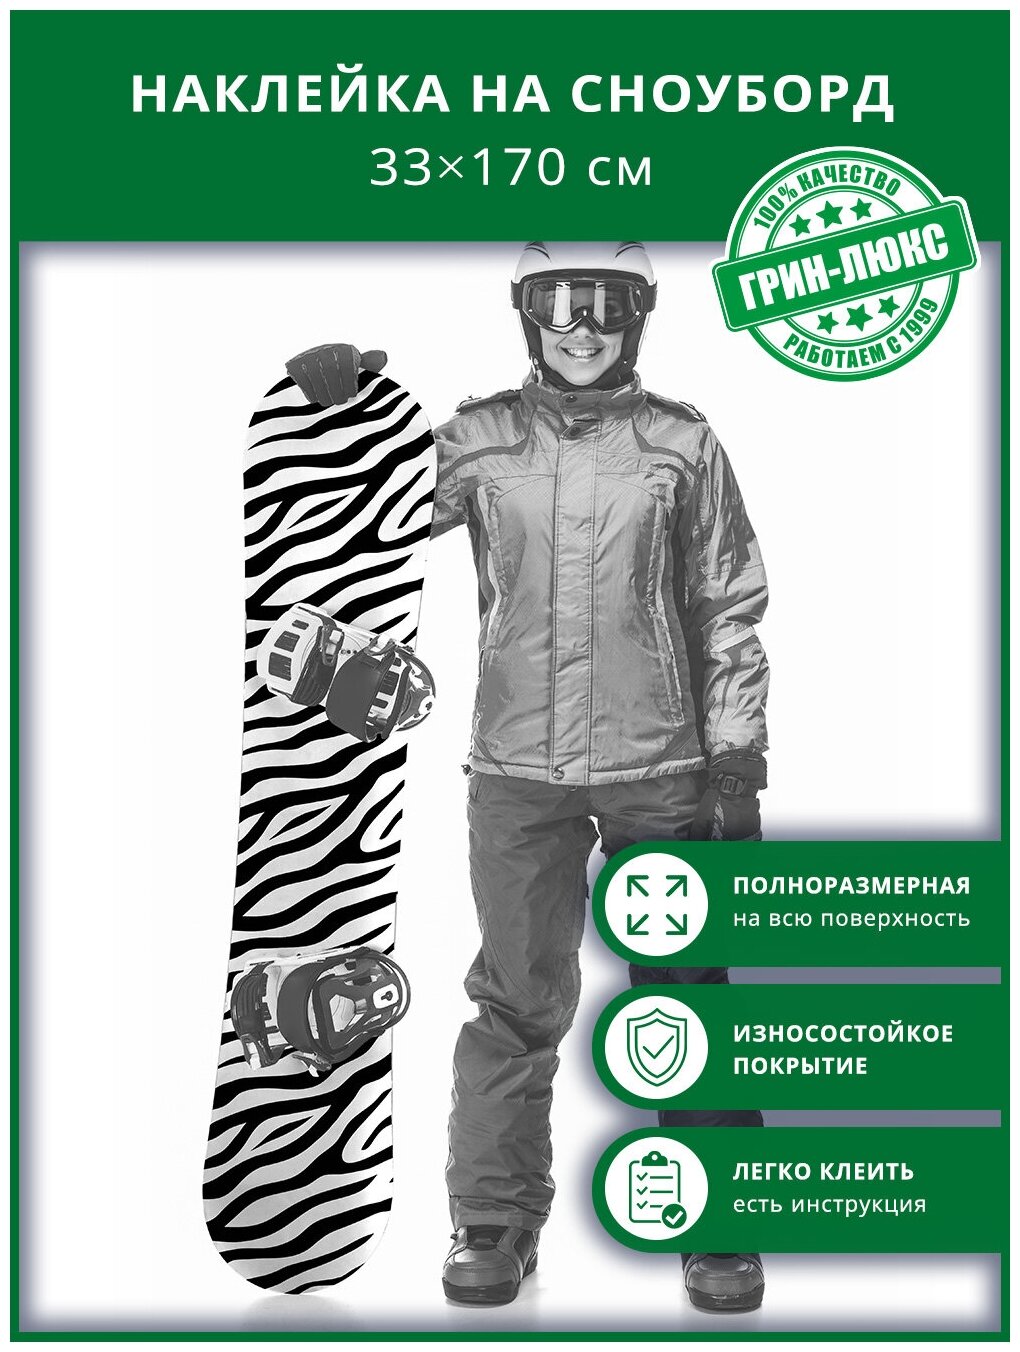 Наклейка на сноуборд с защитным глянцевым покрытием 33х170 см "Принт зебры"